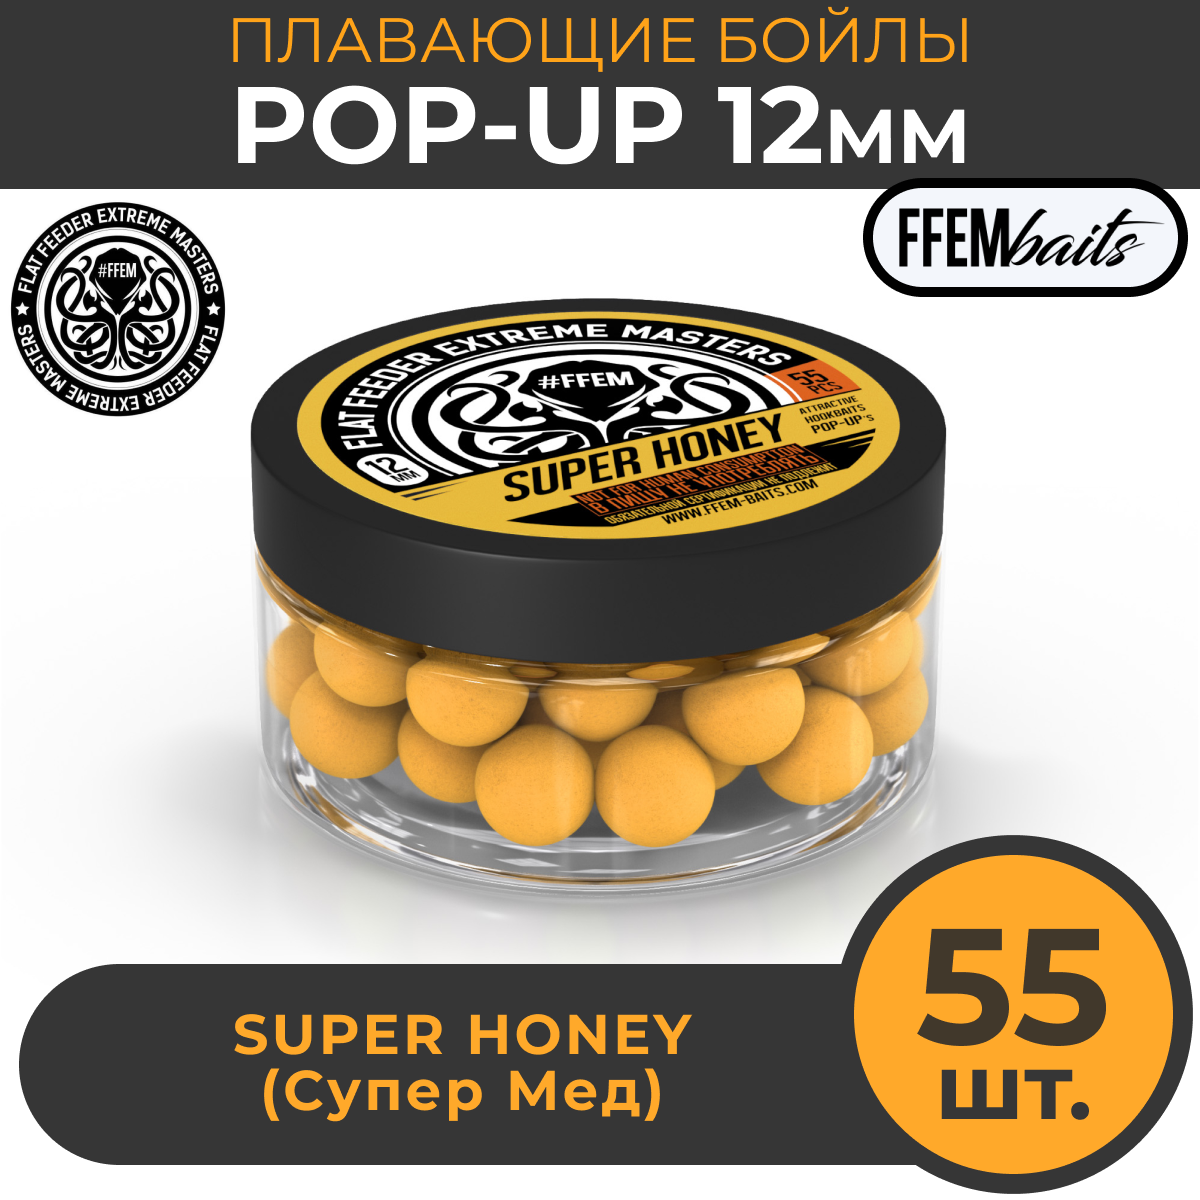 Плавающие бойлы POP-UP 12 мм Super Honey Мёд, 100мл (55шт), супер аттрактивные плавающие насадочные бойлы поп-ап / FFEM Поп ап 12мм